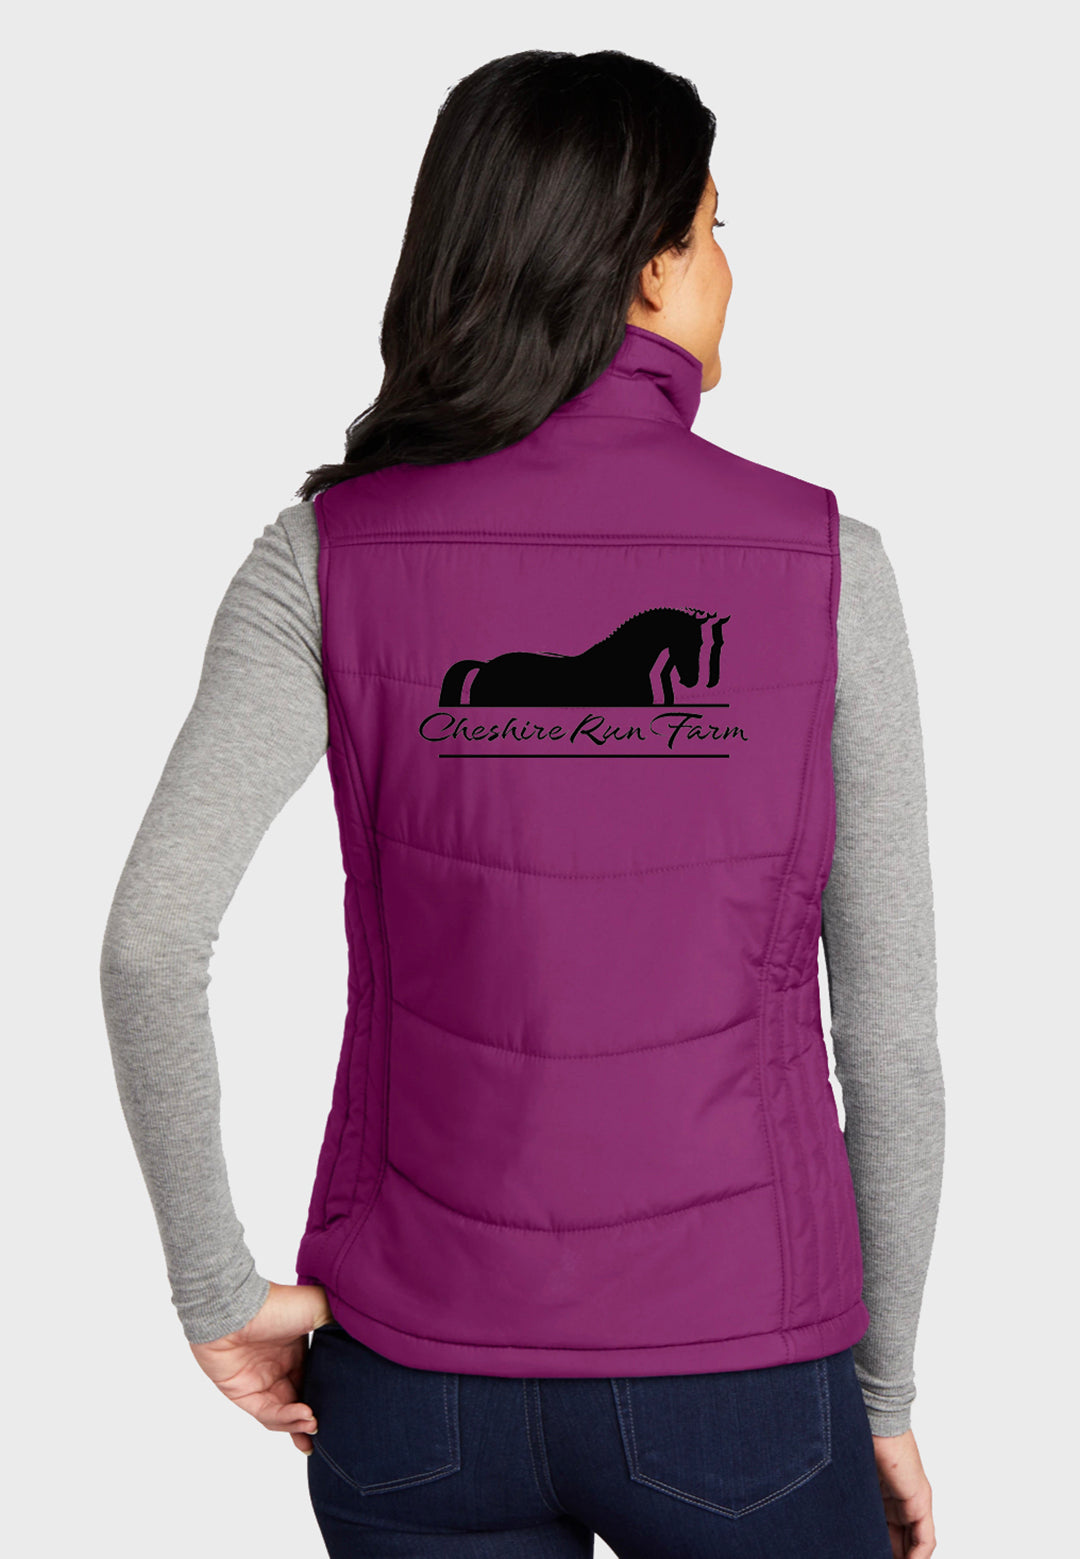 Cheshire Run Farm Port Authority® Ladies Puffy Vest - Dark Slate, Berry